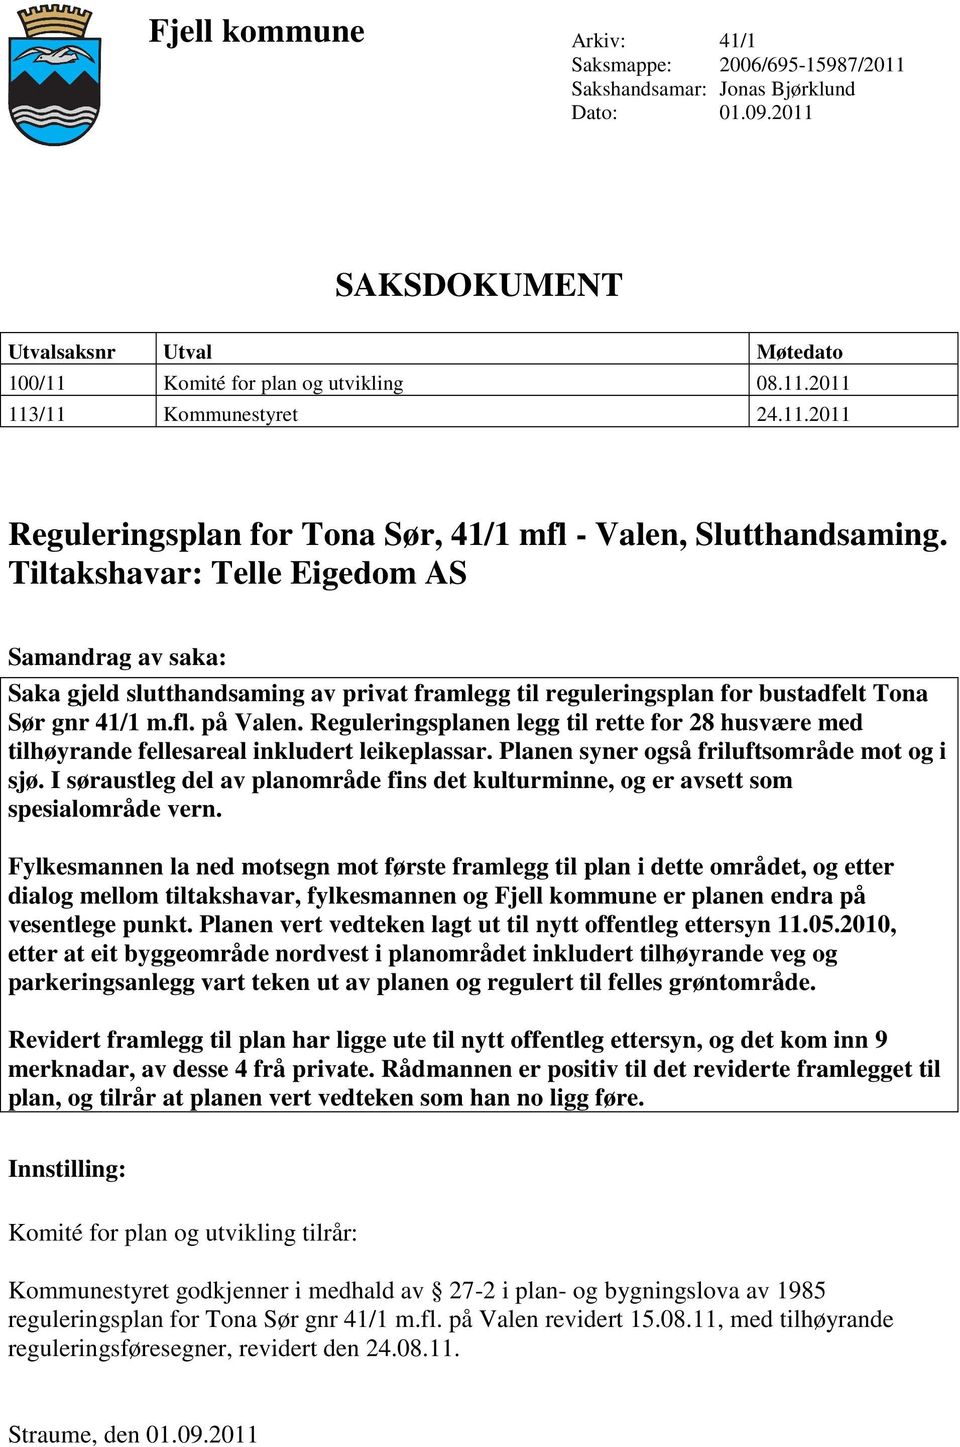 Tiltakshavar: Telle Eigedom AS Samandrag av saka: Saka gjeld slutthandsaming av privat framlegg til reguleringsplan for bustadfelt Tona Sør gnr 41/1 m.fl. på Valen.